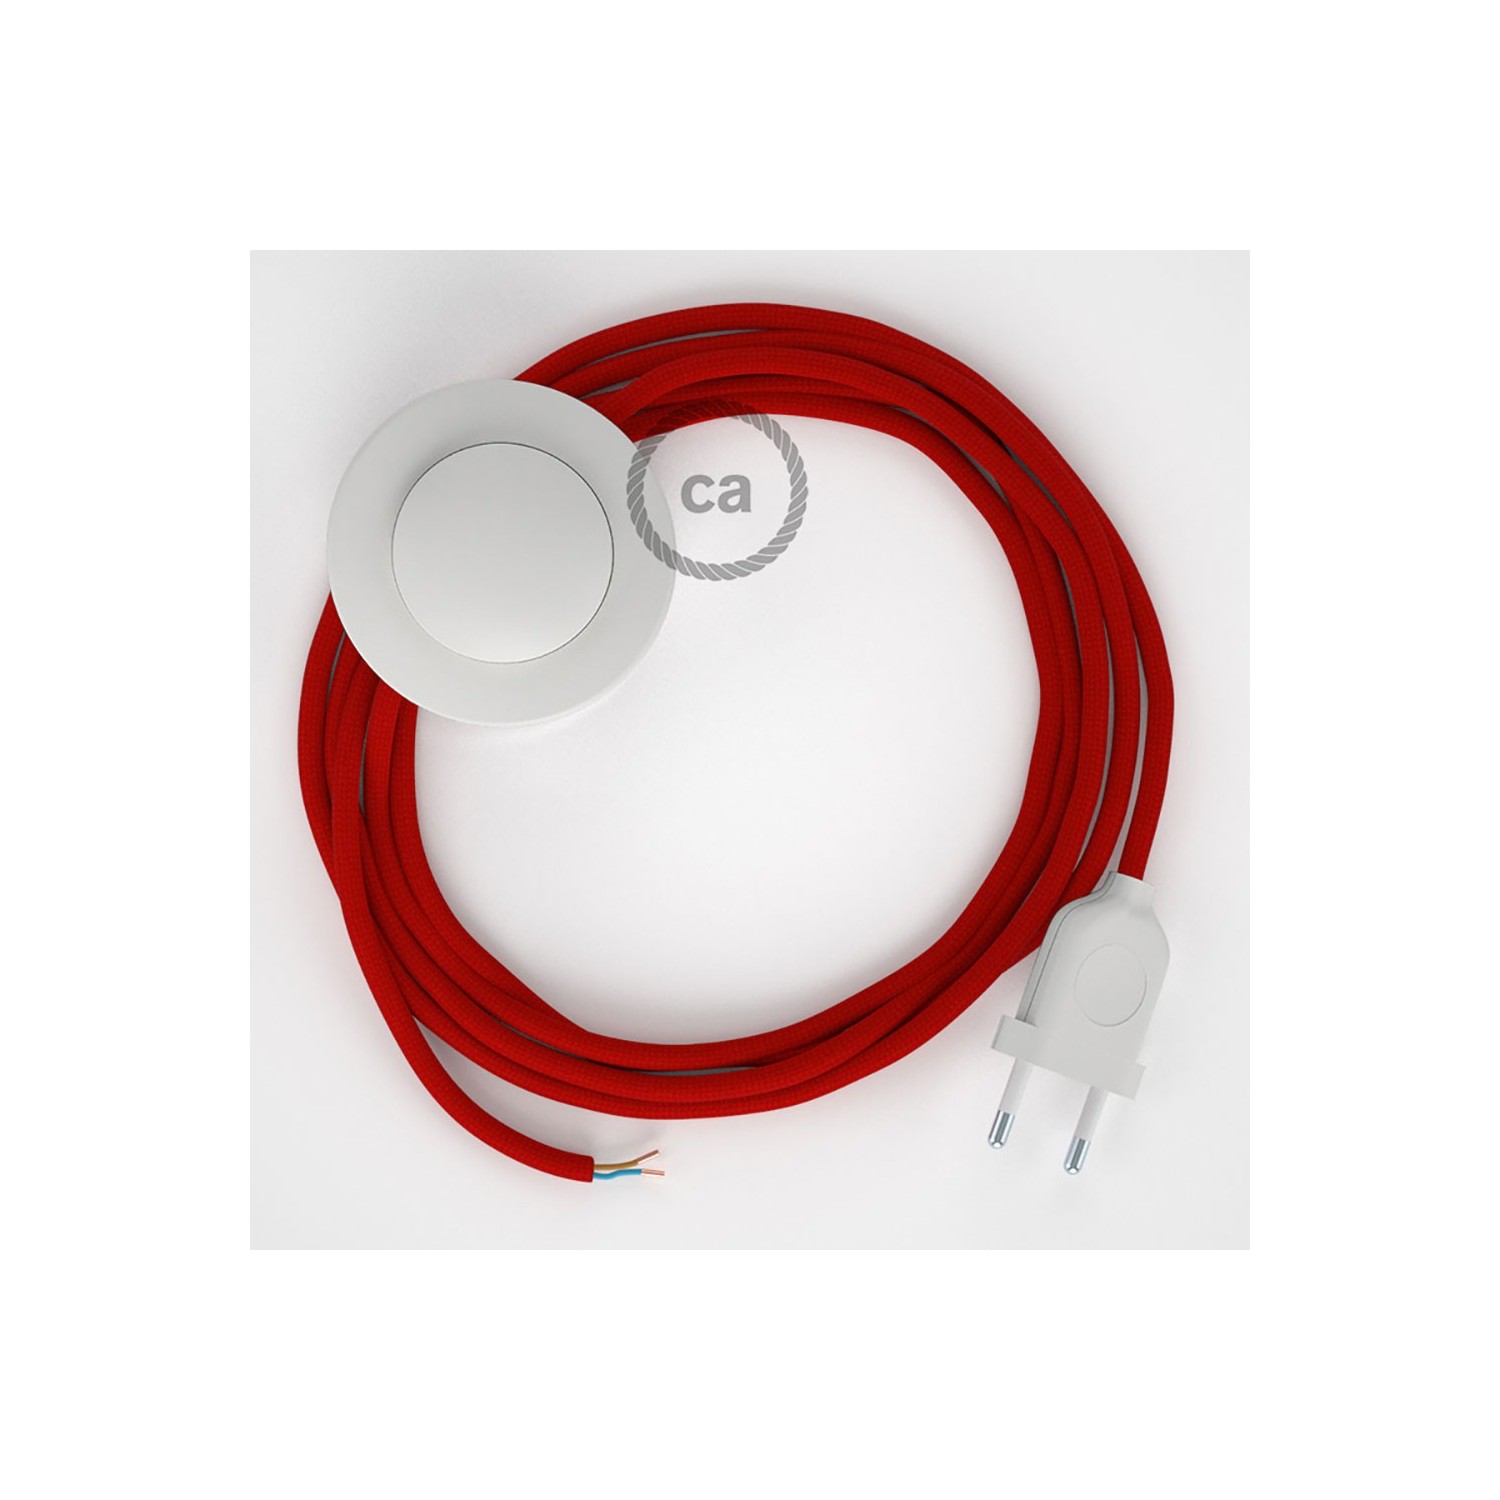 Sladdställ med fotströmbrytare, RM09 Röd Viskos 3 m. Välj färg på strömbrytare och kontakt